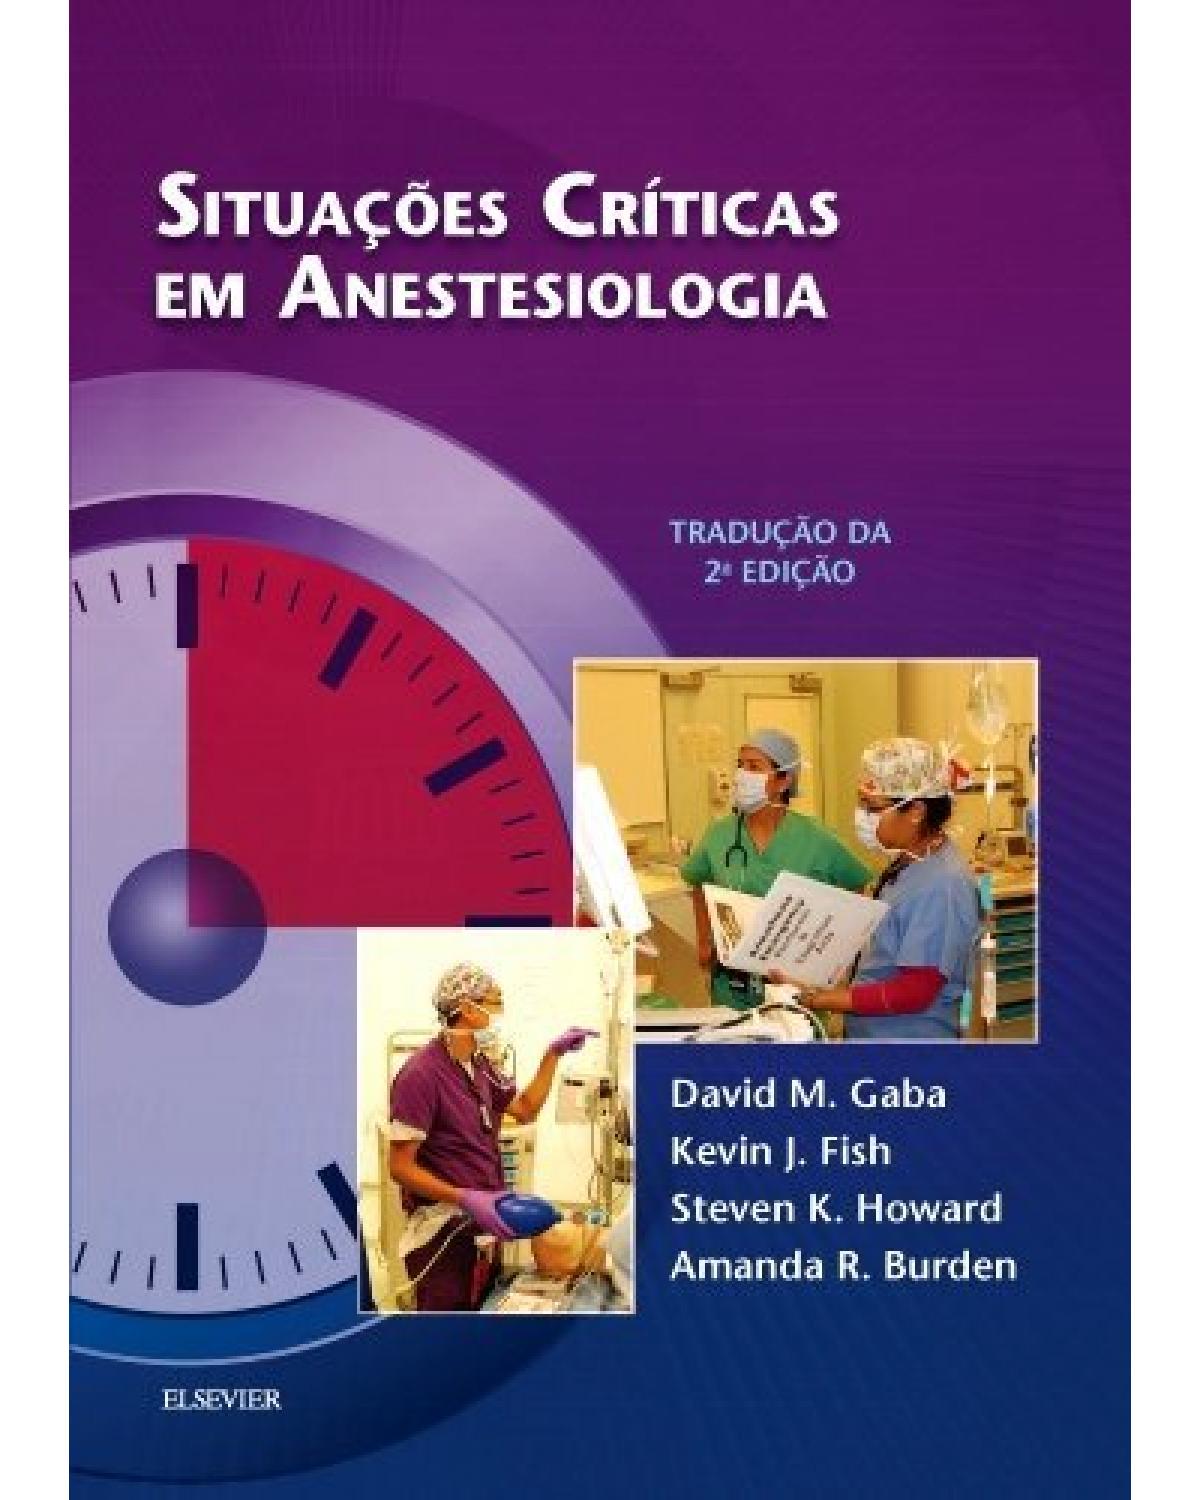 Situações críticas em anestesiologia - 2ª Edição | 2016